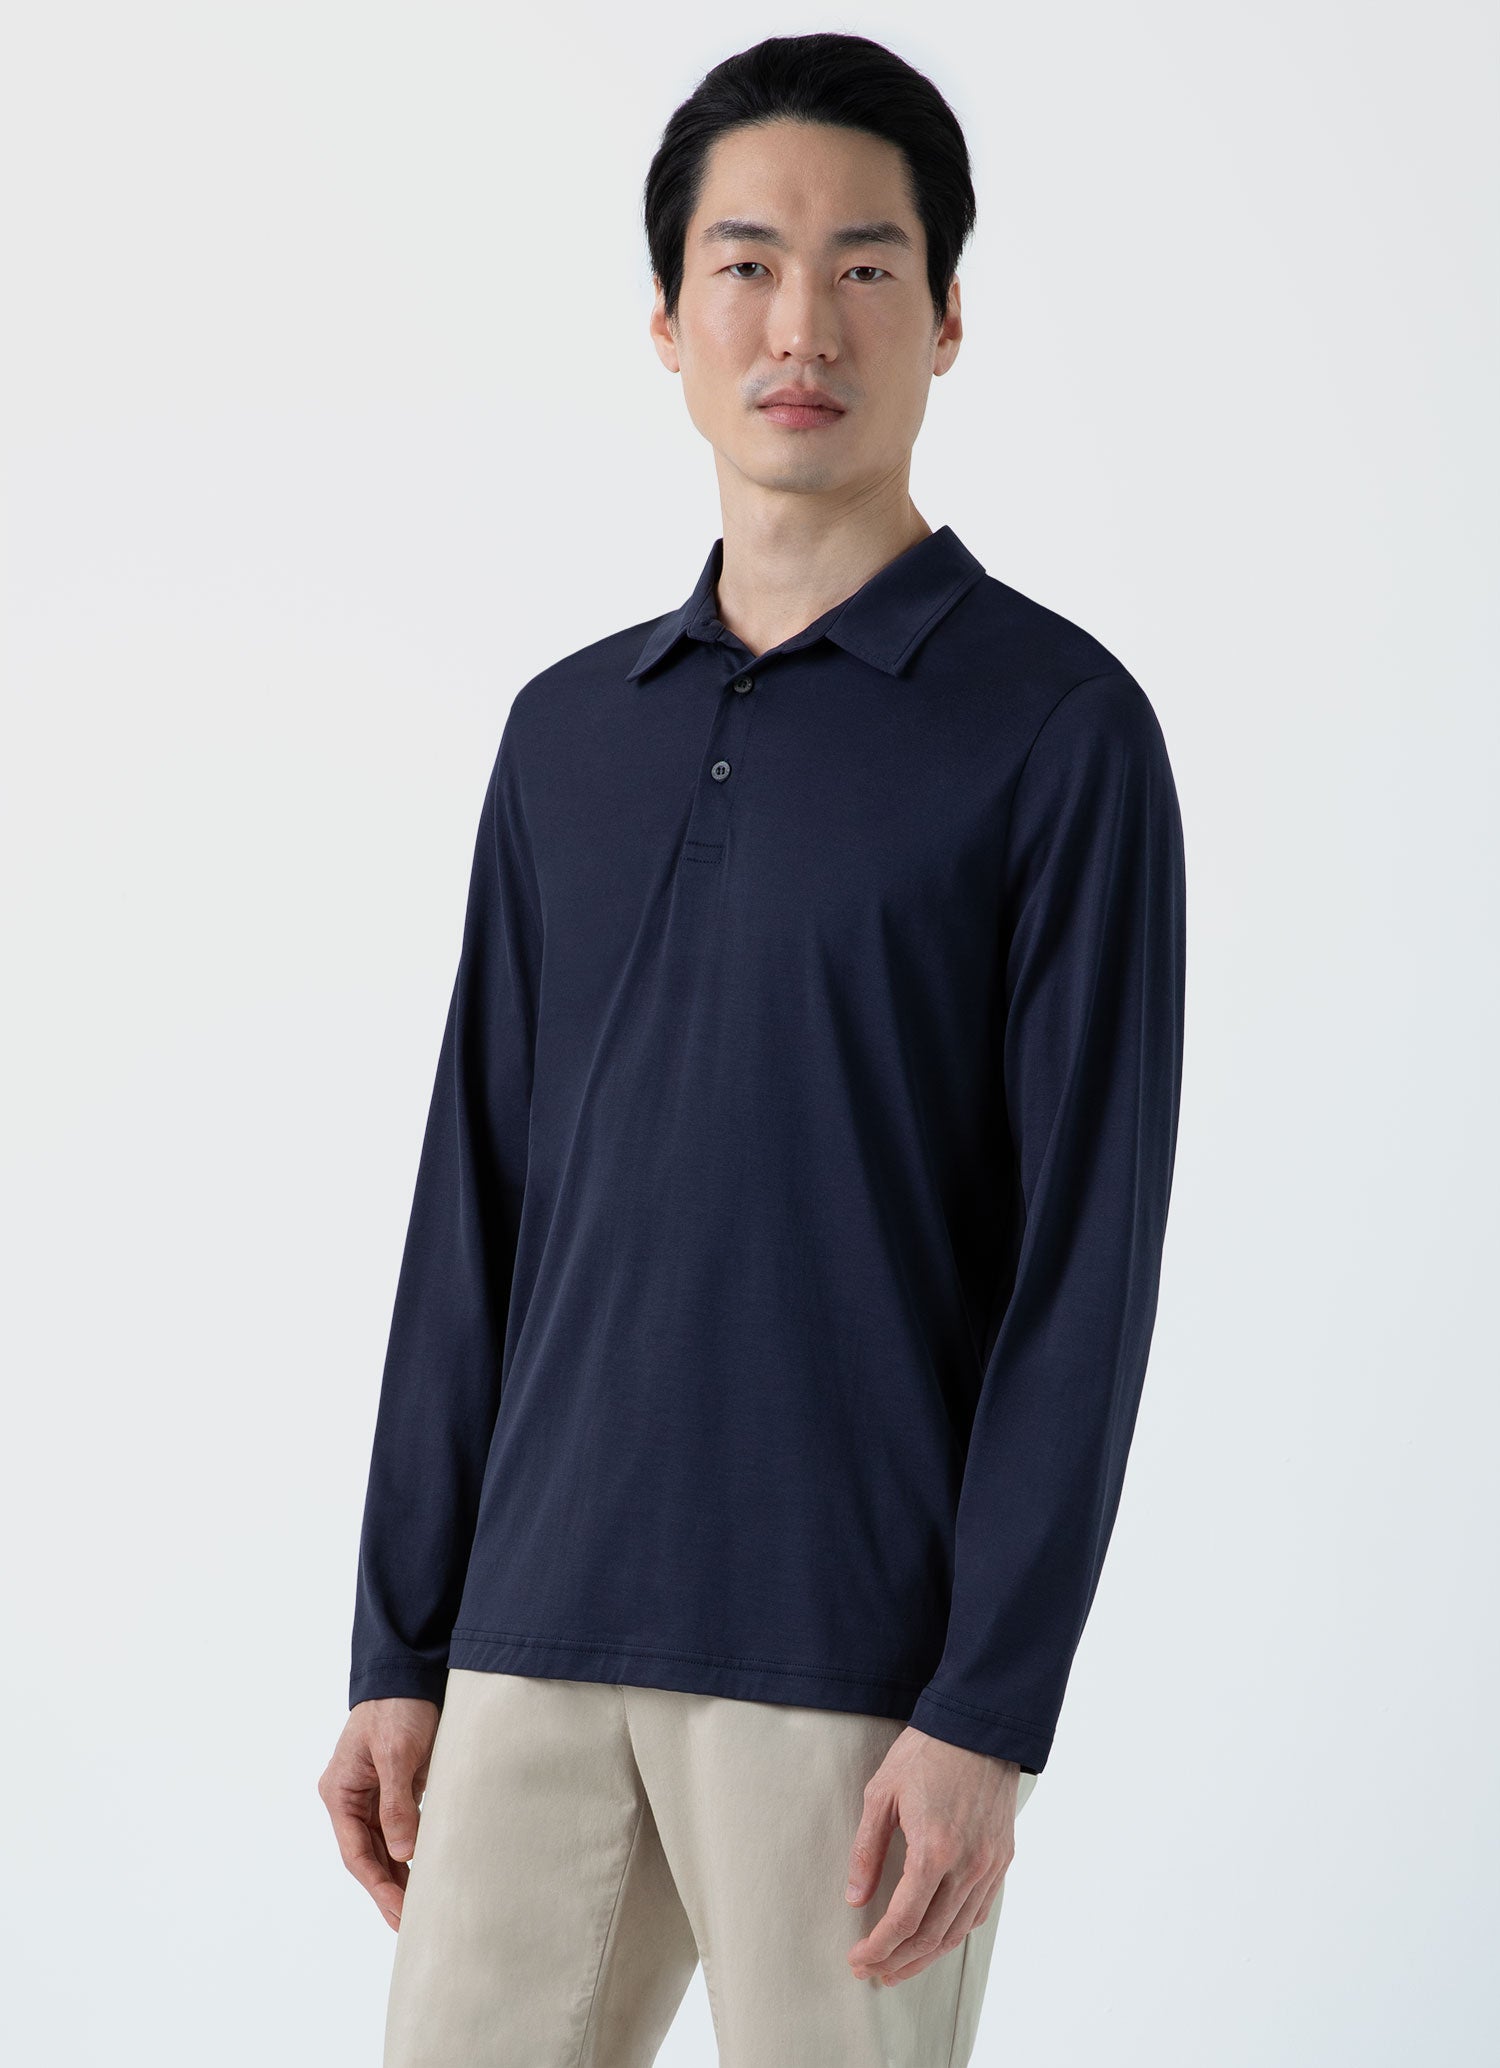 Men's Long Sleeve Jersey Polo Shirt in Navy | Sunspel